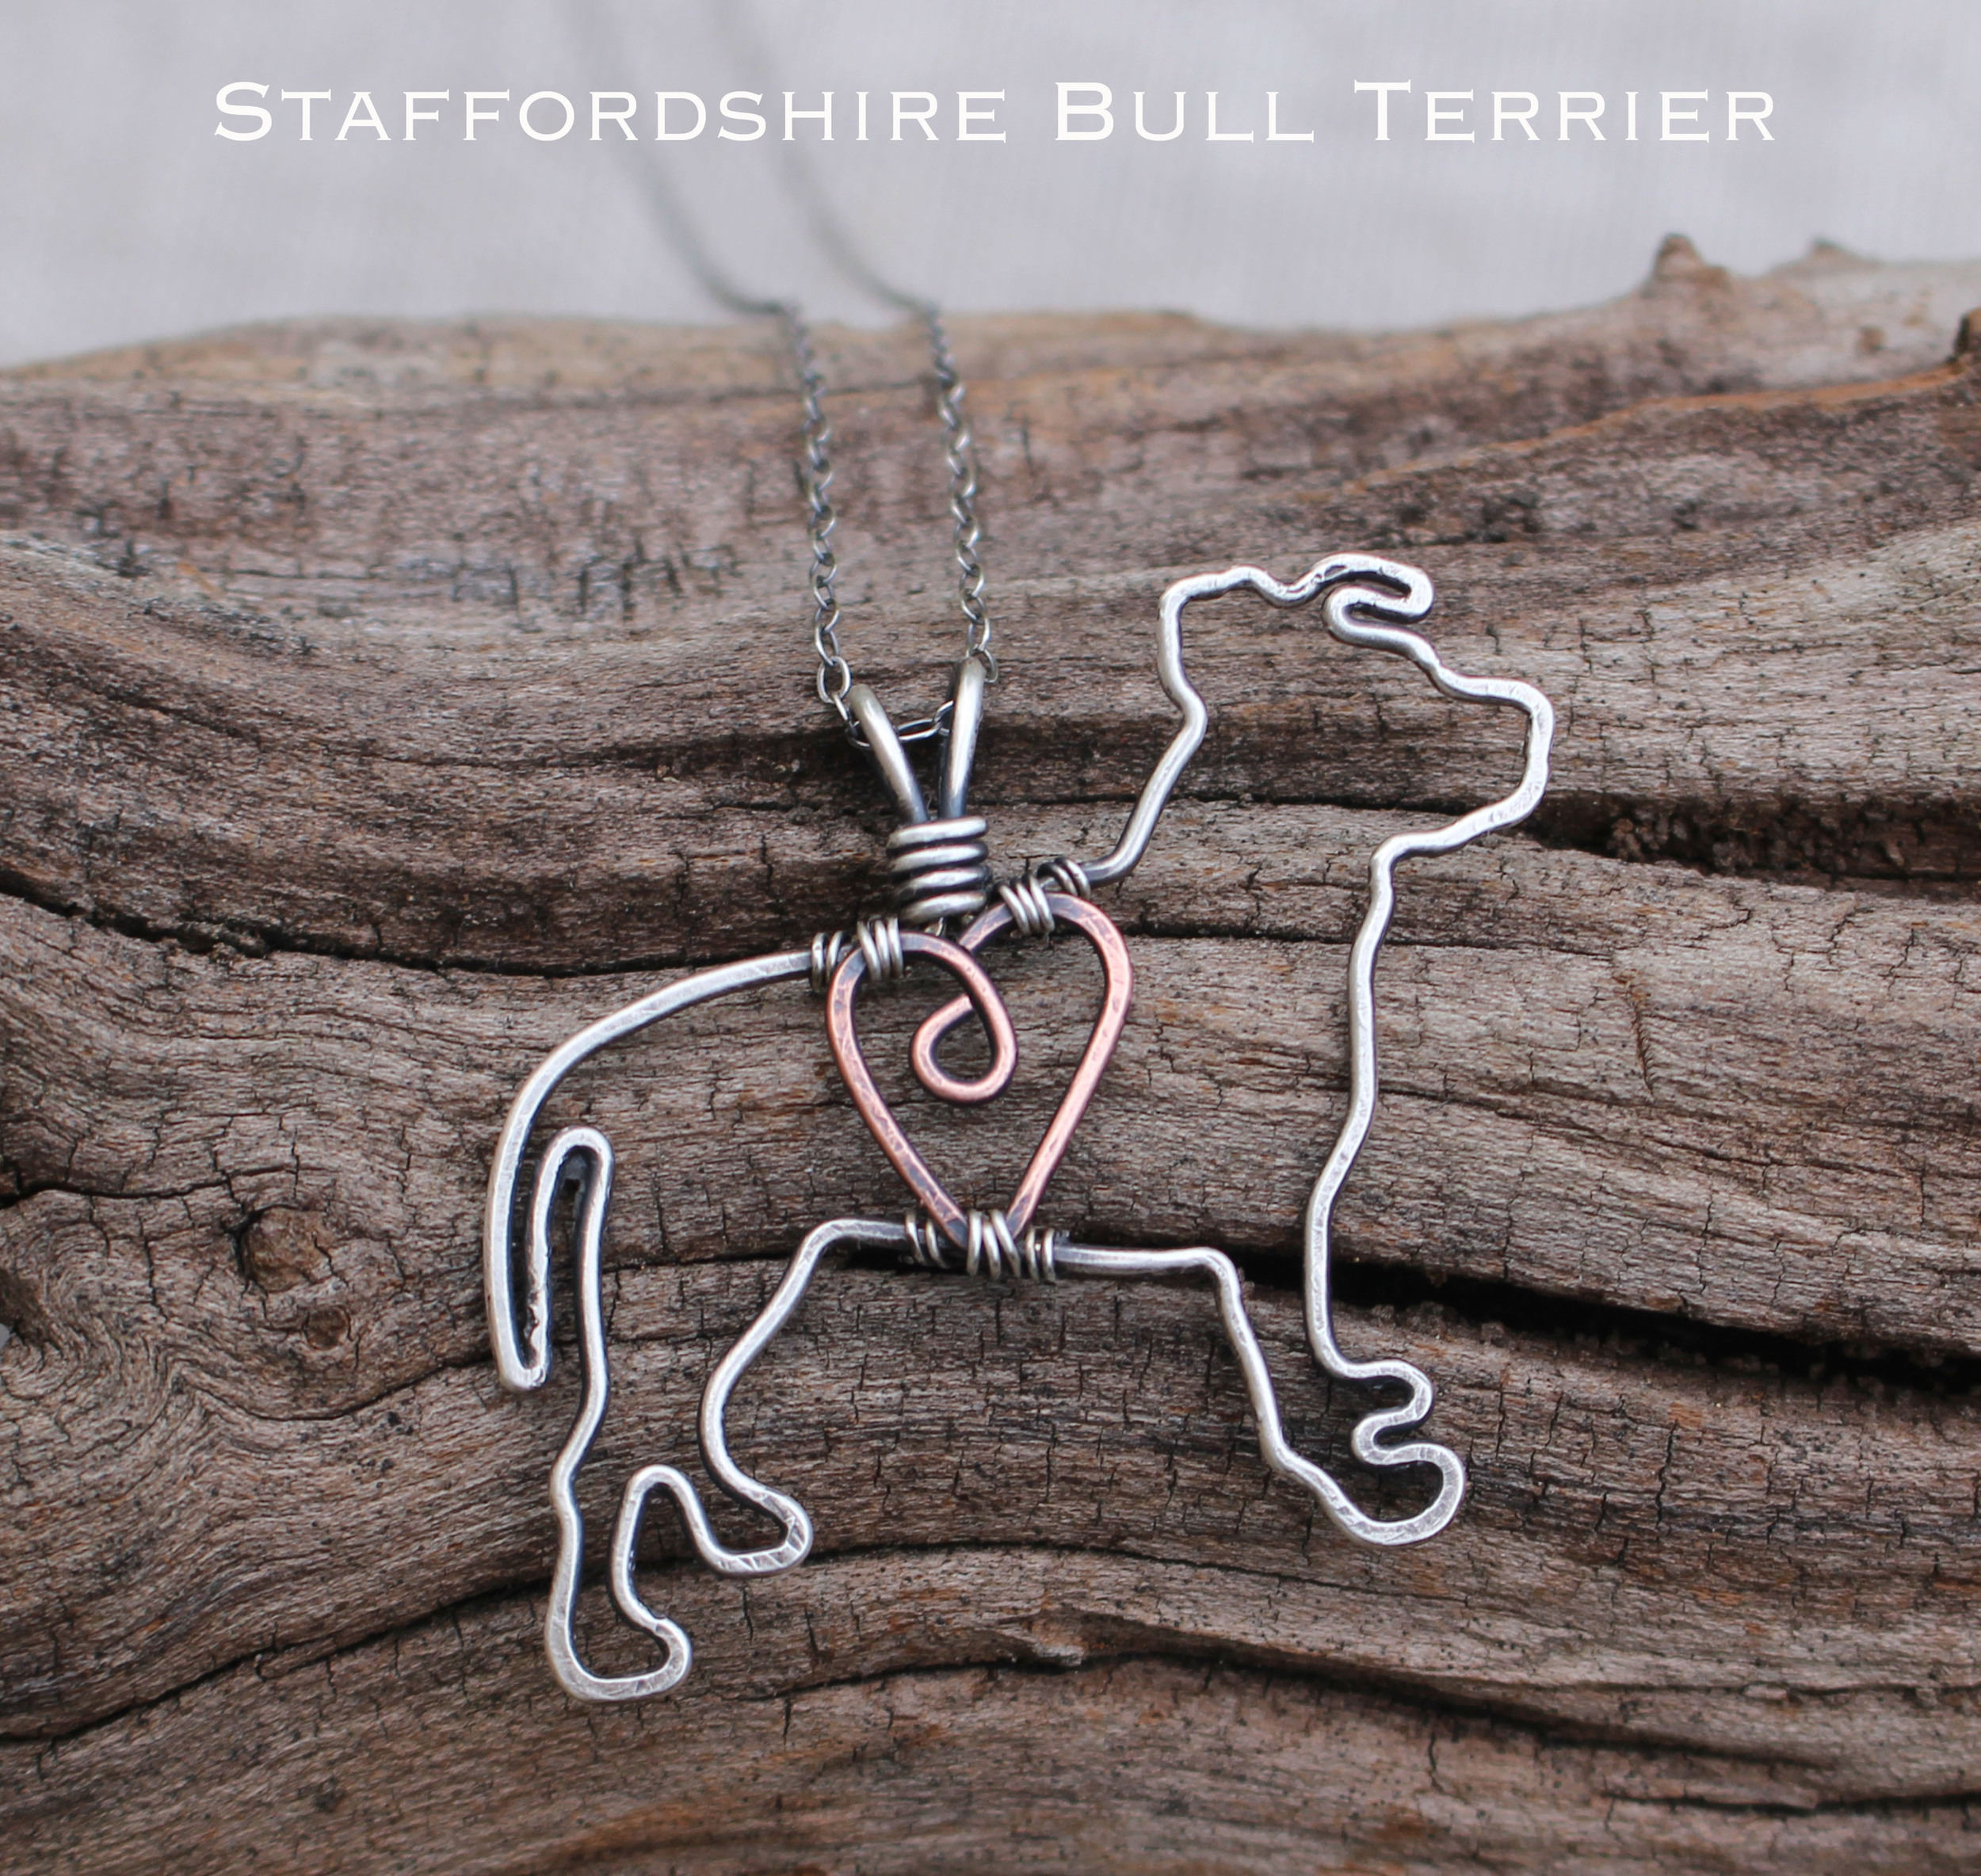 stafordshire terrier3.jpg